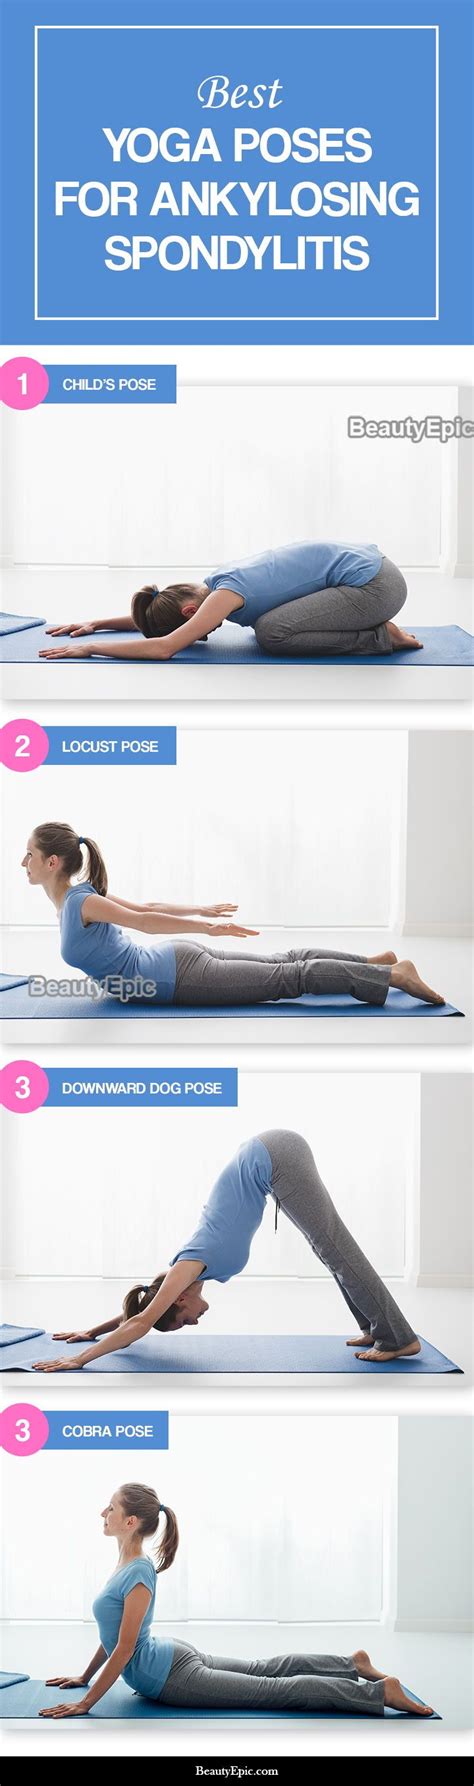 6 Effective Yoga Poses For Ankylosing Spondylitis Ankylosing